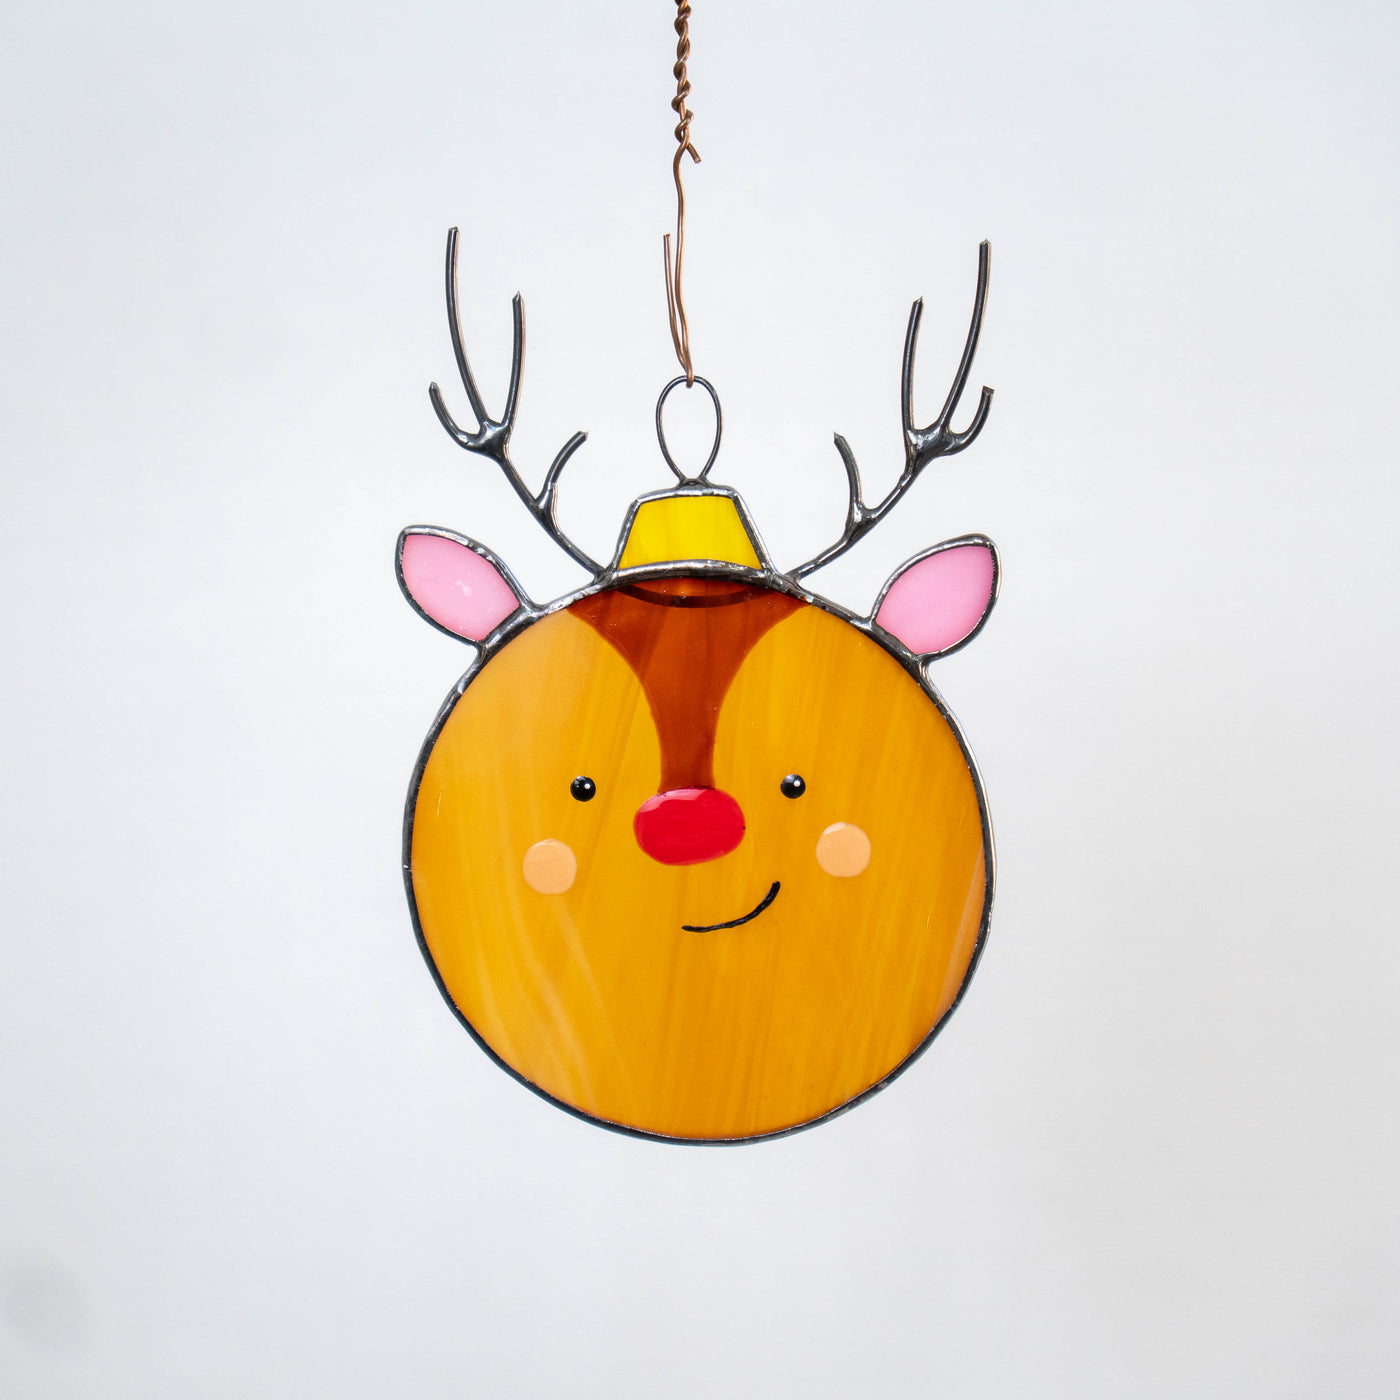 Stained glass round reindeer suncatcher